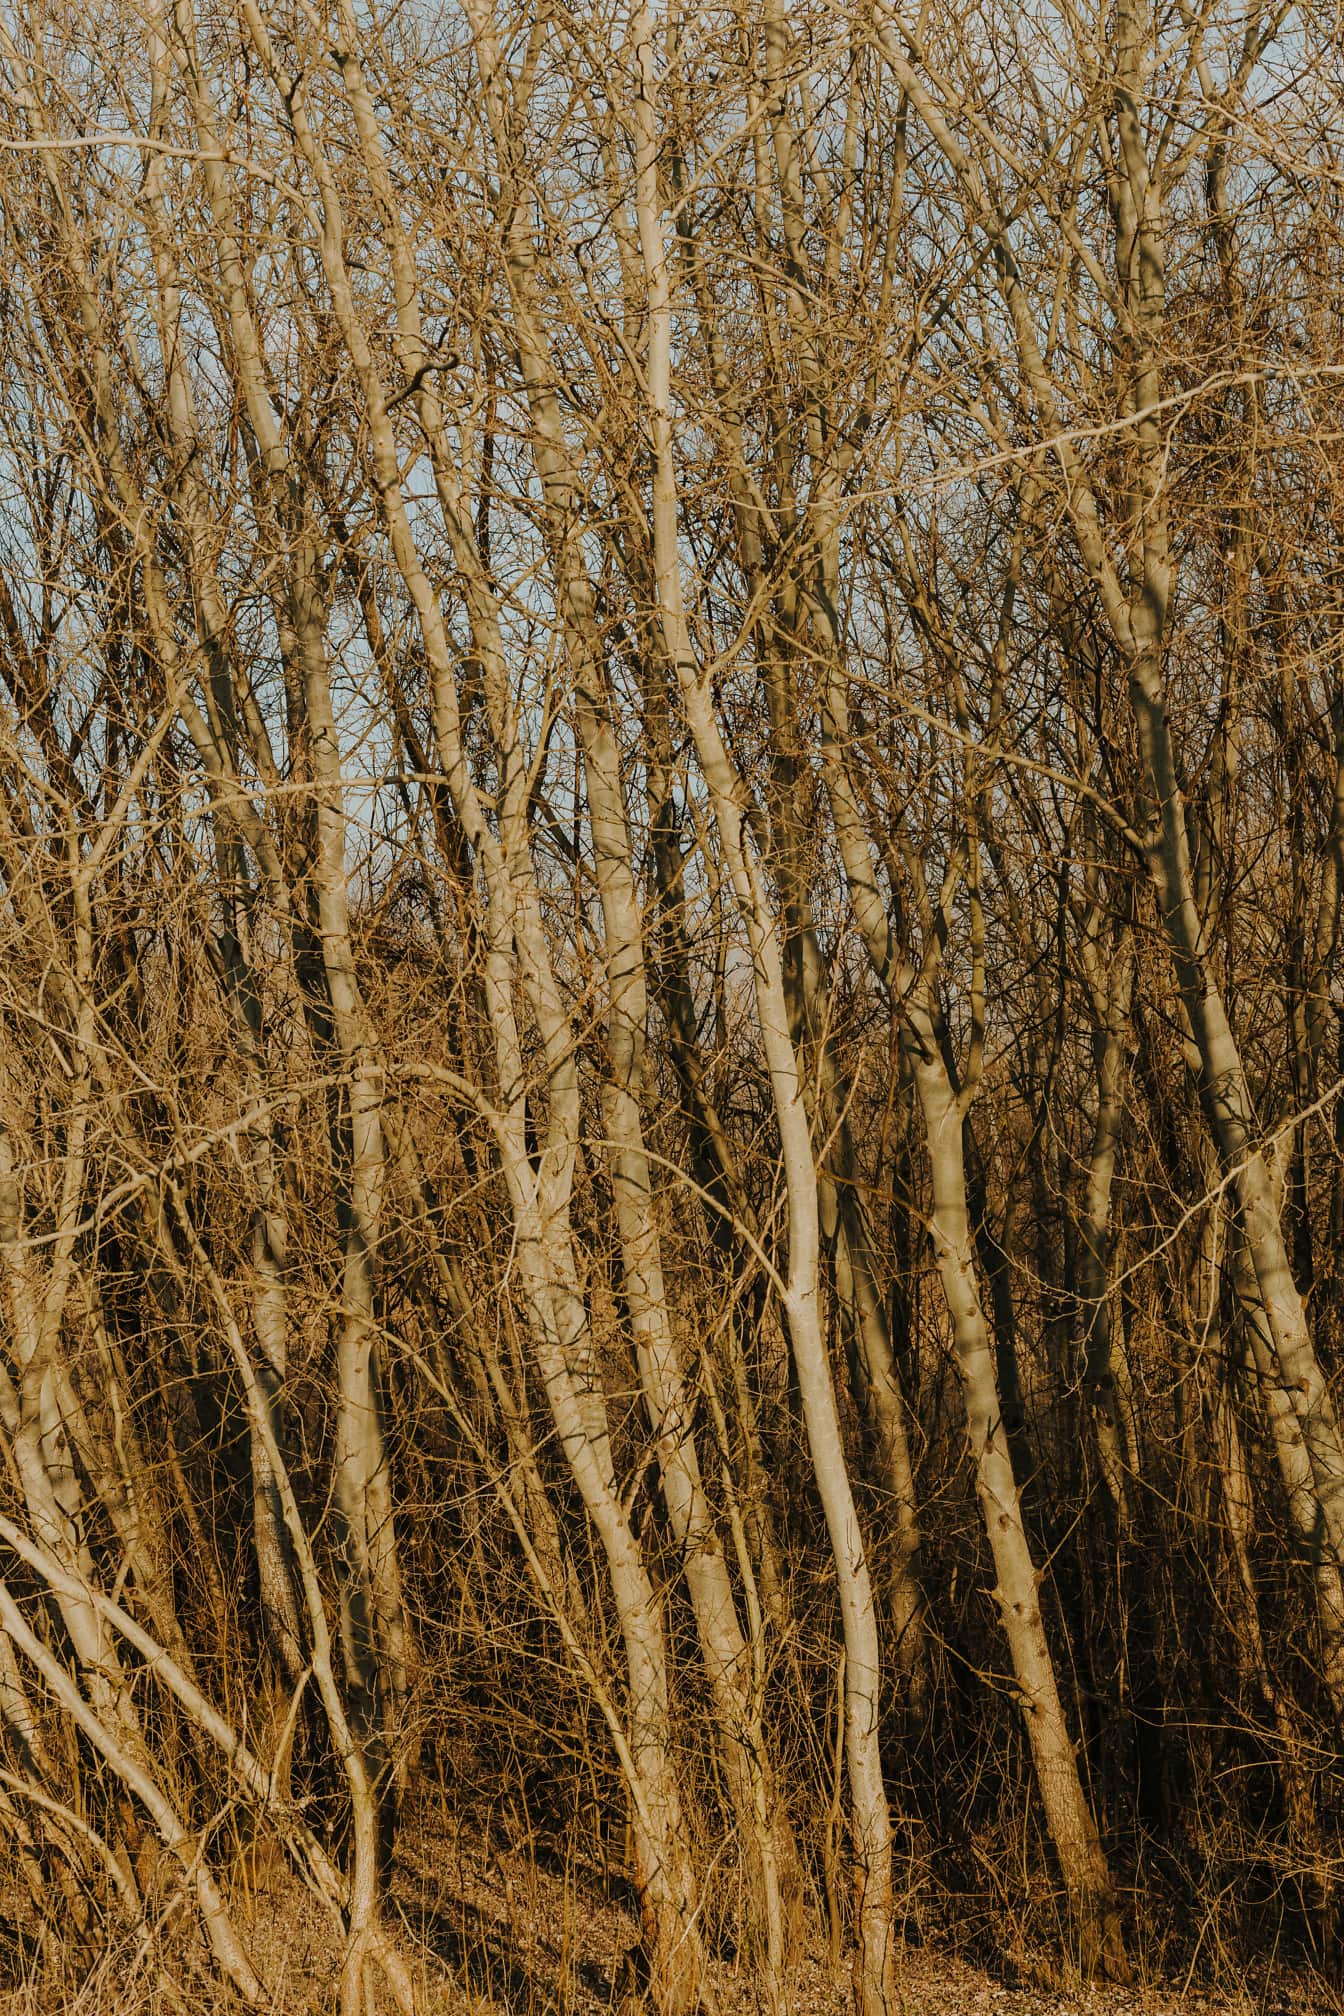 Nuoret poppelipuut aurinkoisessa metsässä syyskaudella